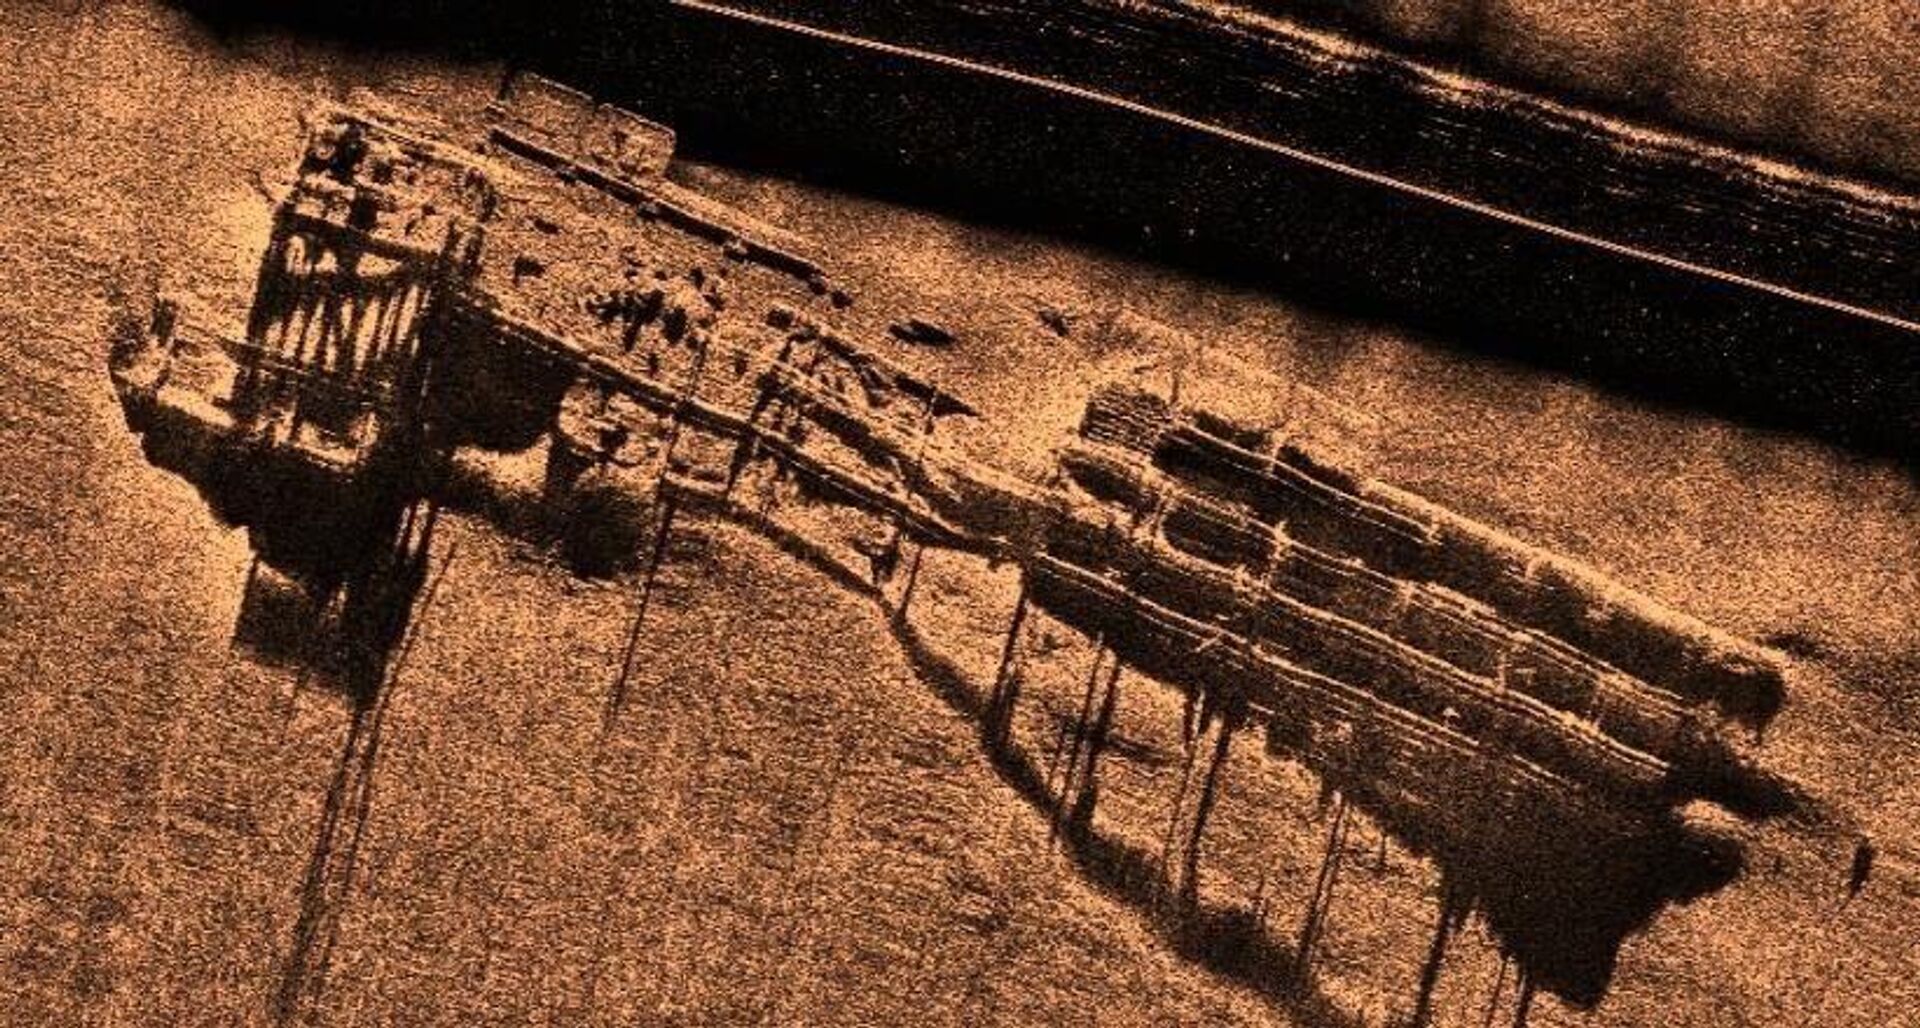 Због лоше видљивости под водом, рониоци су буквално морали да напипавају бродове, што је јако опасно, јер око себе имају неексплодирана убојна средства - Sputnik Србија, 1920, 11.12.2021